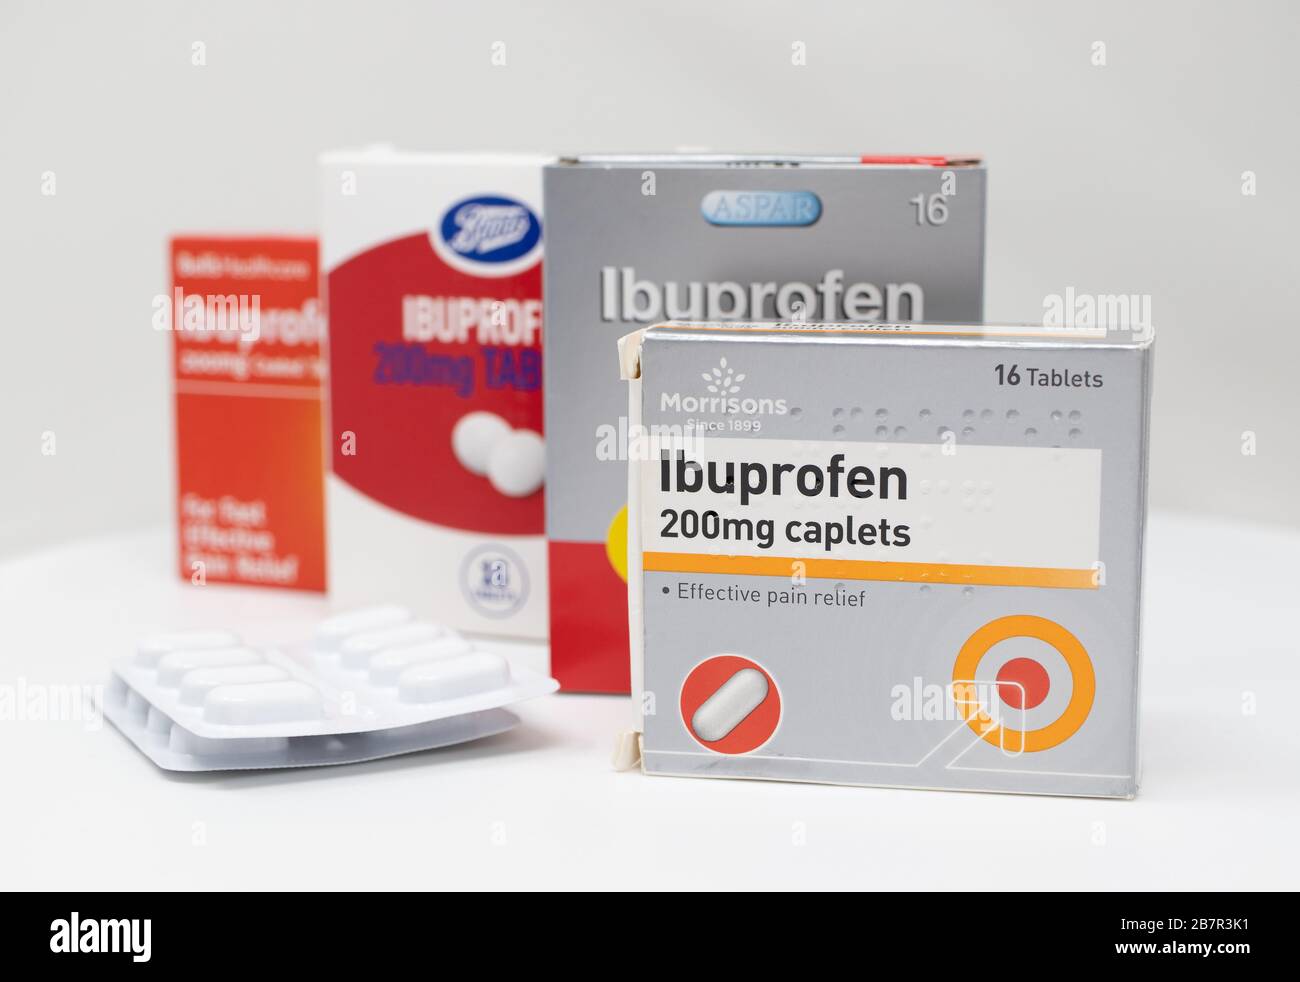 Londra / UK - 17 Marzo 2020 - Supermarket marche di Ibuprofen farmaci  antinfiammatori scatole e confezioni di compresse su sfondo bianco Foto  stock - Alamy